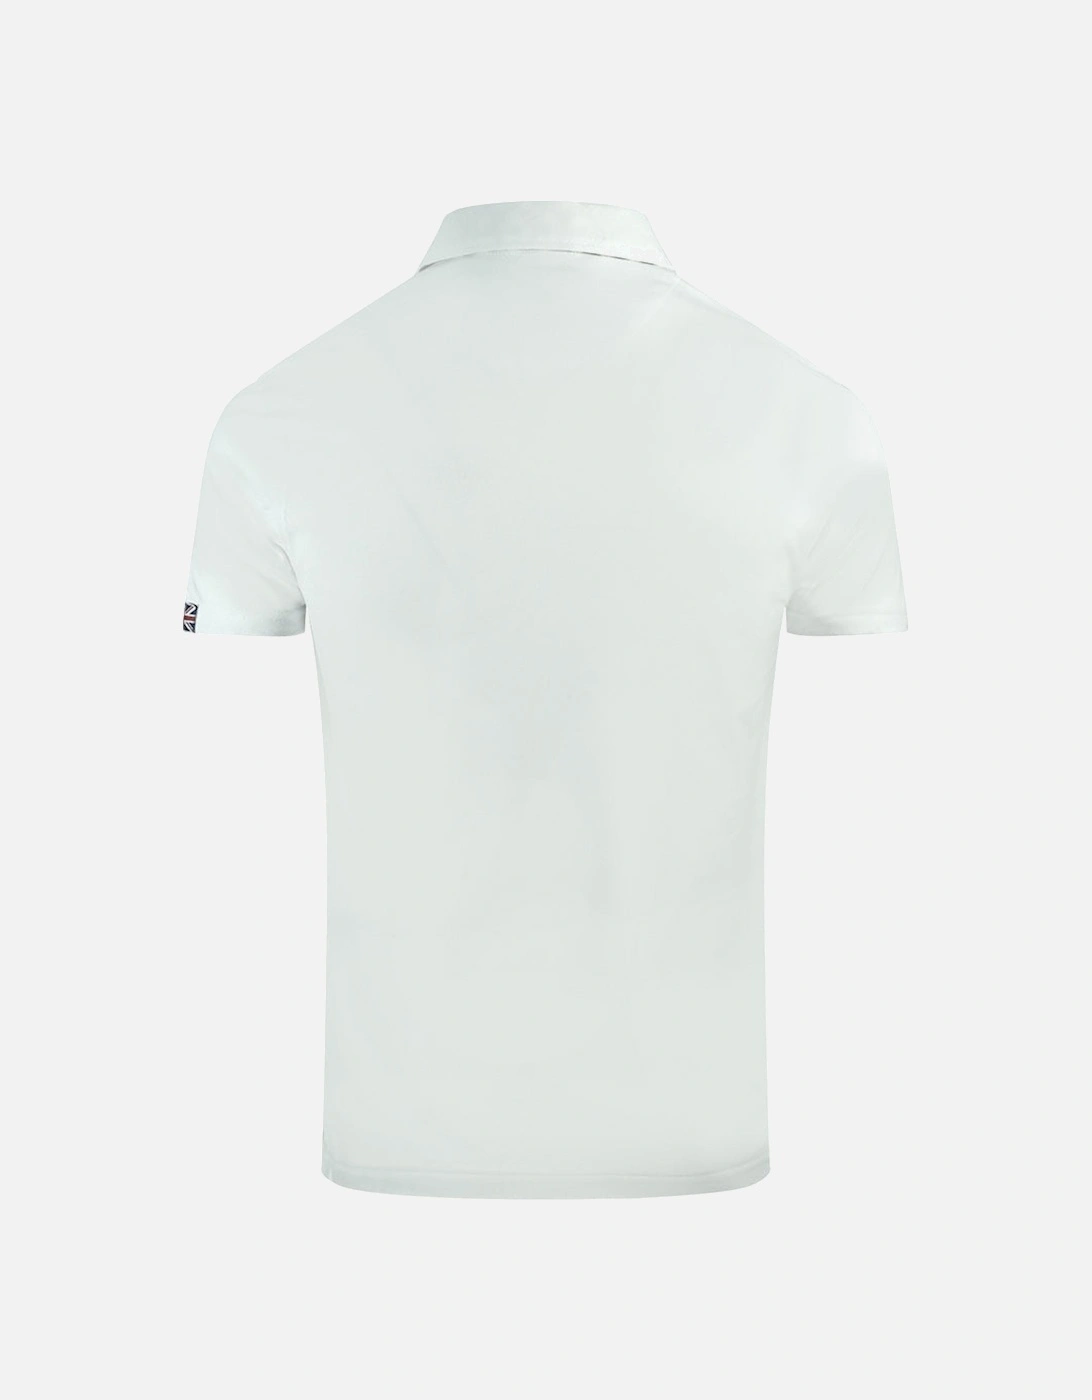 Aldis Crest Chest Logo White Polo Shirt